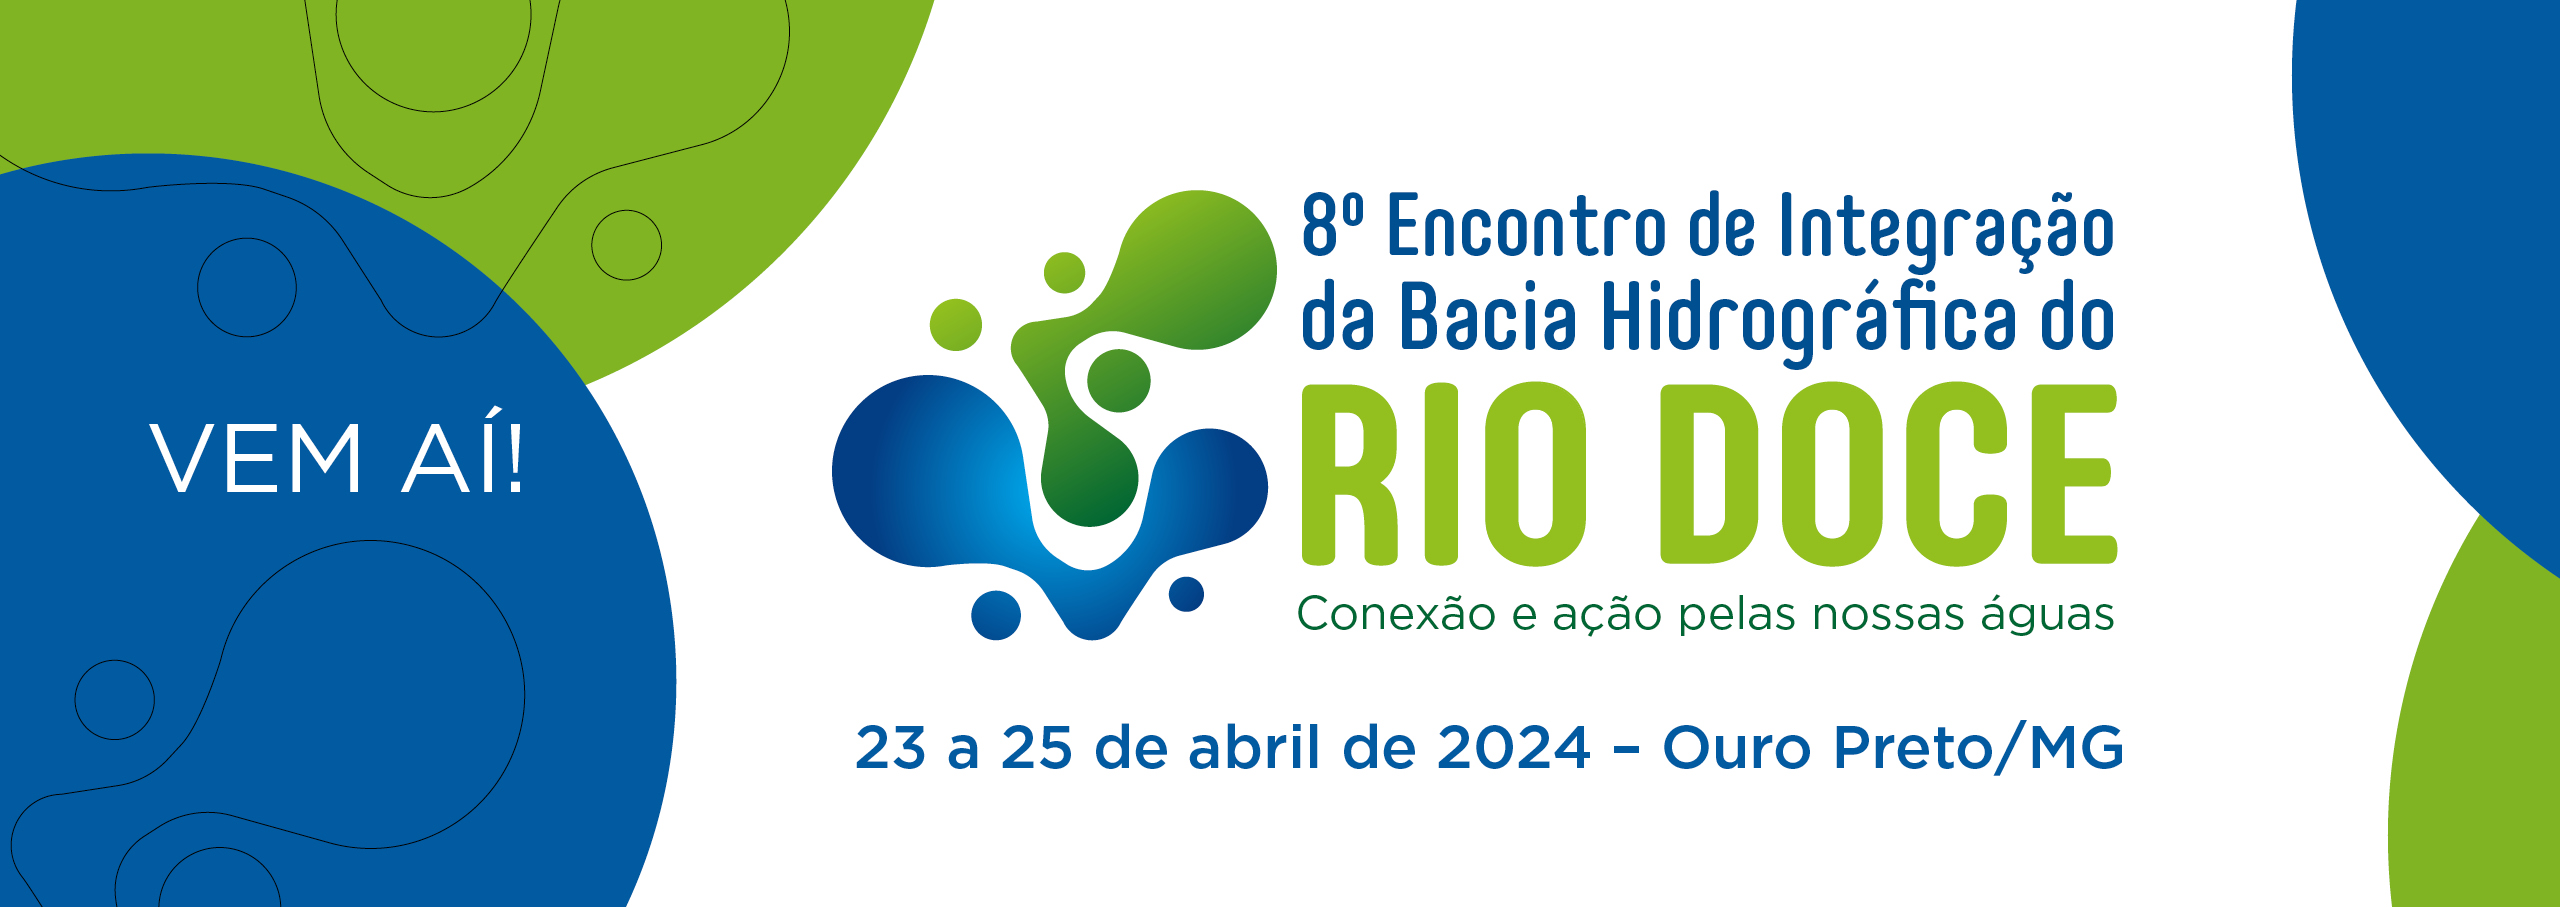 8º Encontro de Integração com o Comitê da Bacia Hidrográfica do Rio Doce acontece em Ouro Preto